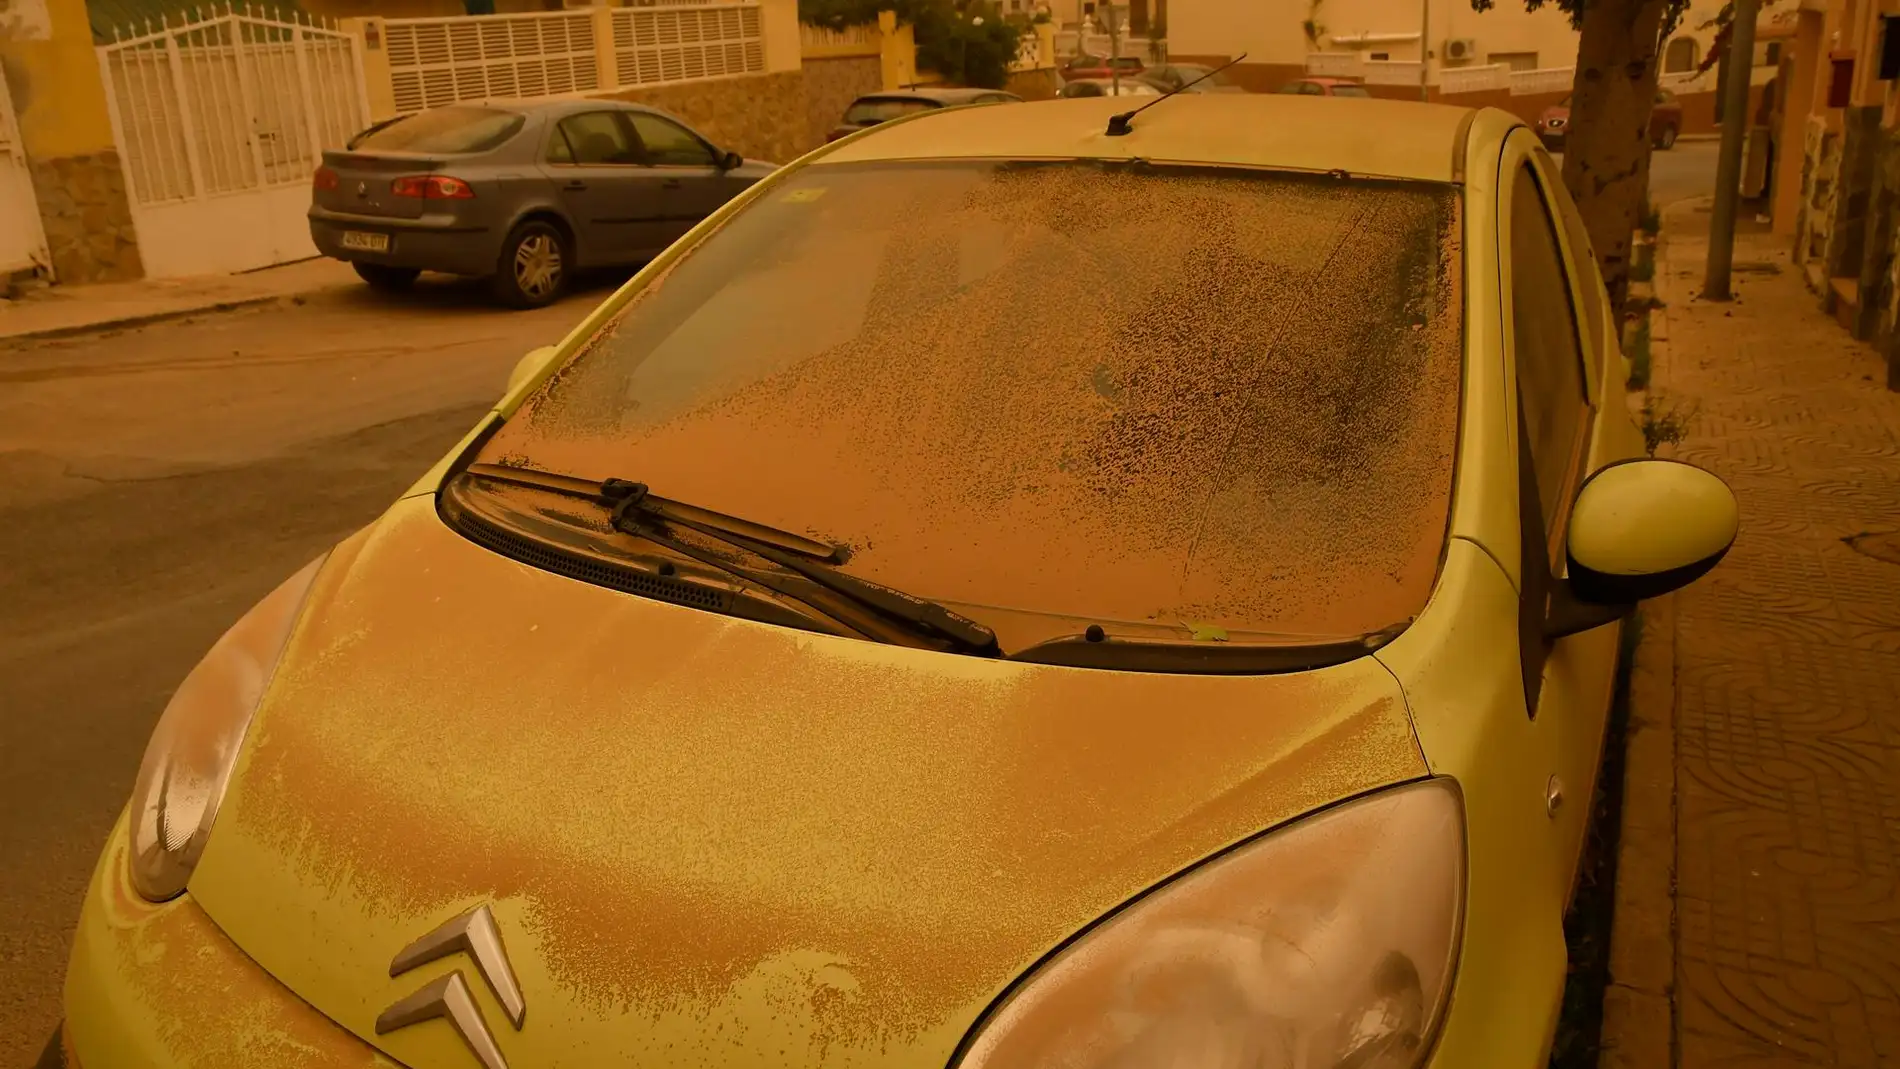 Supervivencia Glosario apenas Nube de polvo sahariano: cuándo lavar el coche y consejos para no dañarlo  tras la lluvia de barro | Onda Cero Radio